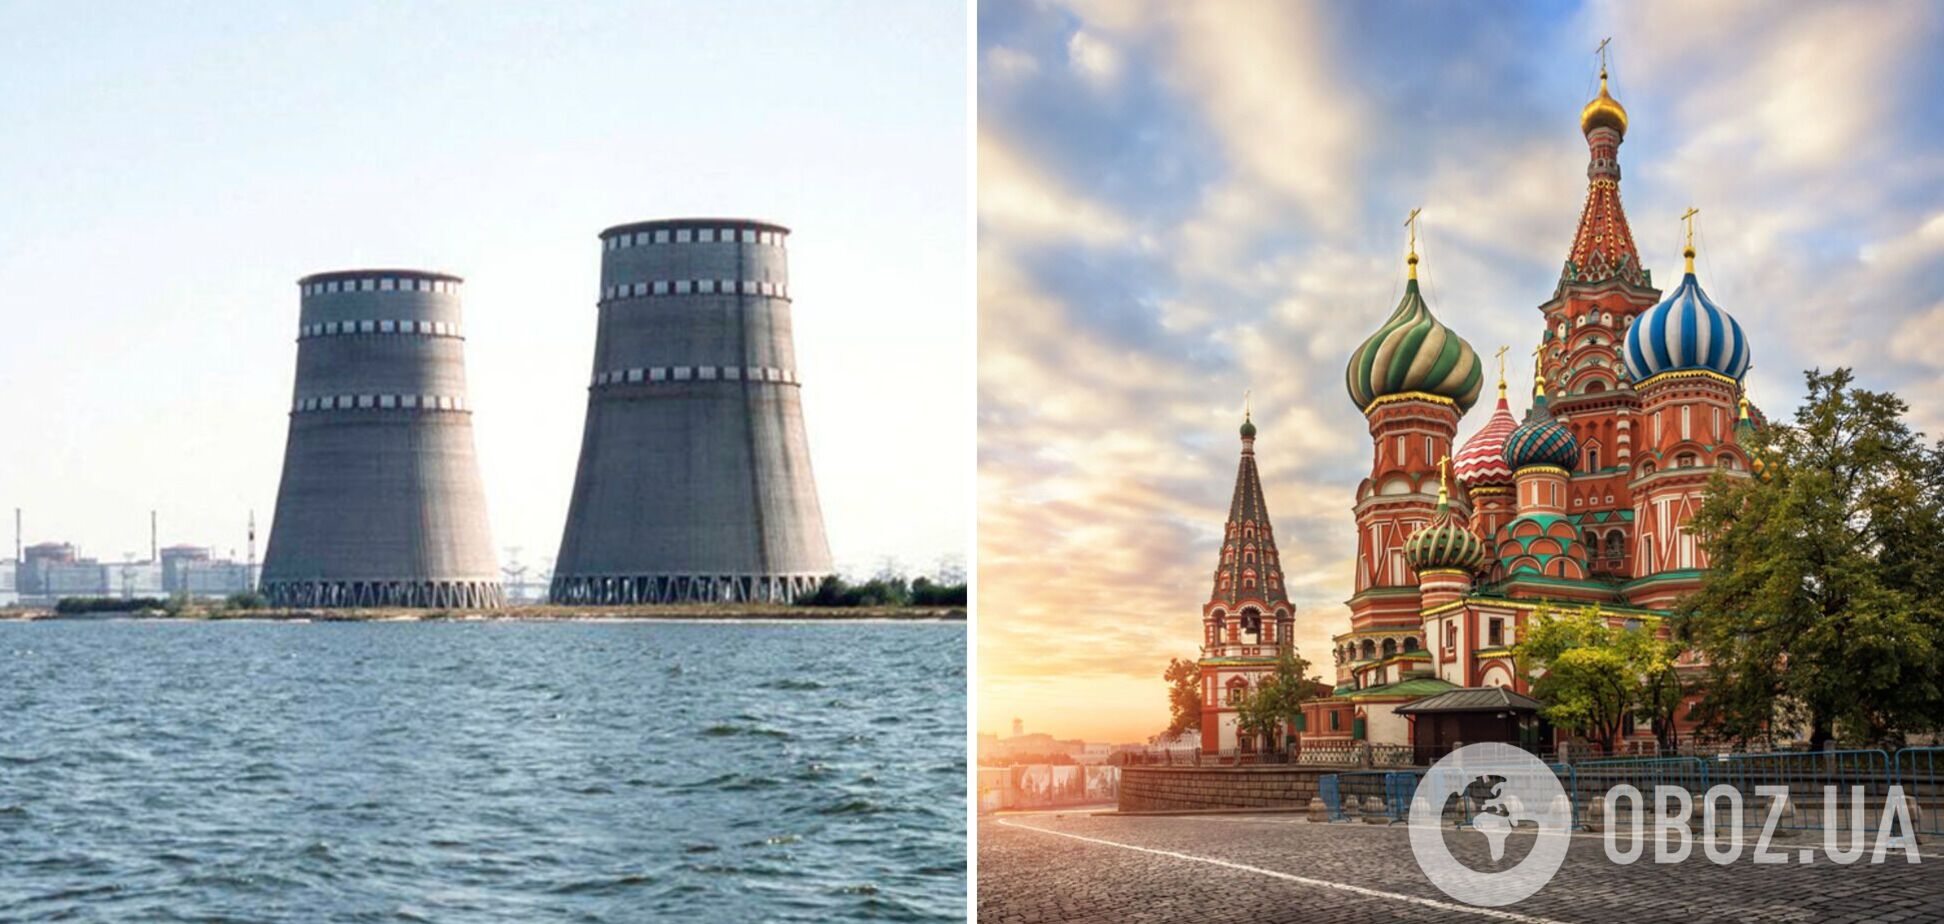 Любое изменение ситуации на Запорожской АЭС будет означать акт ядерного терроризма